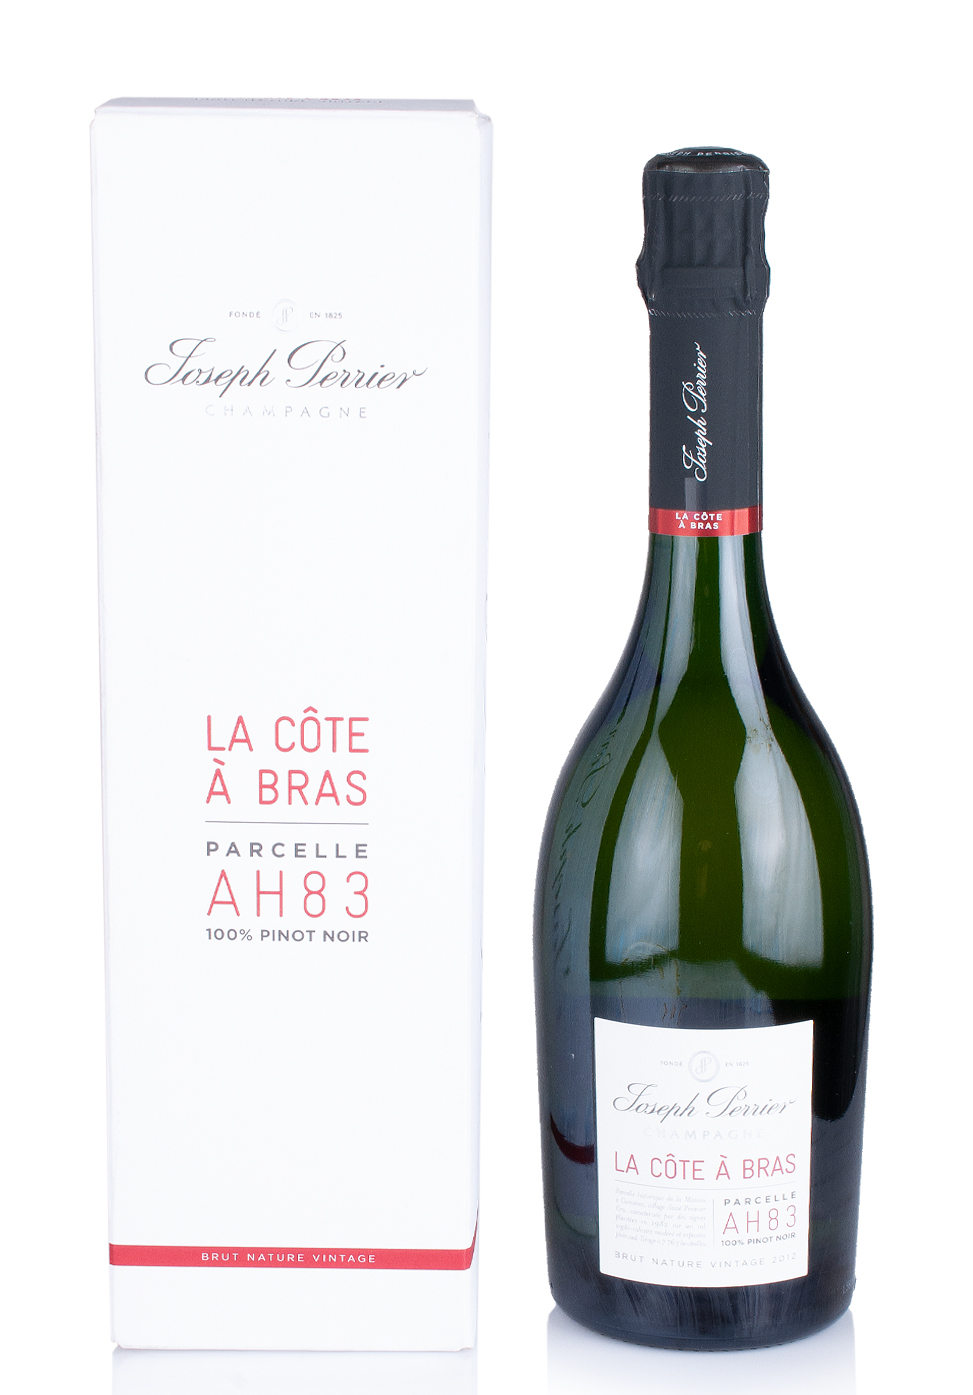 Champagne Joseph Perrier Cuvee Royale La Cote a Bras 2013 (0.75L) Image